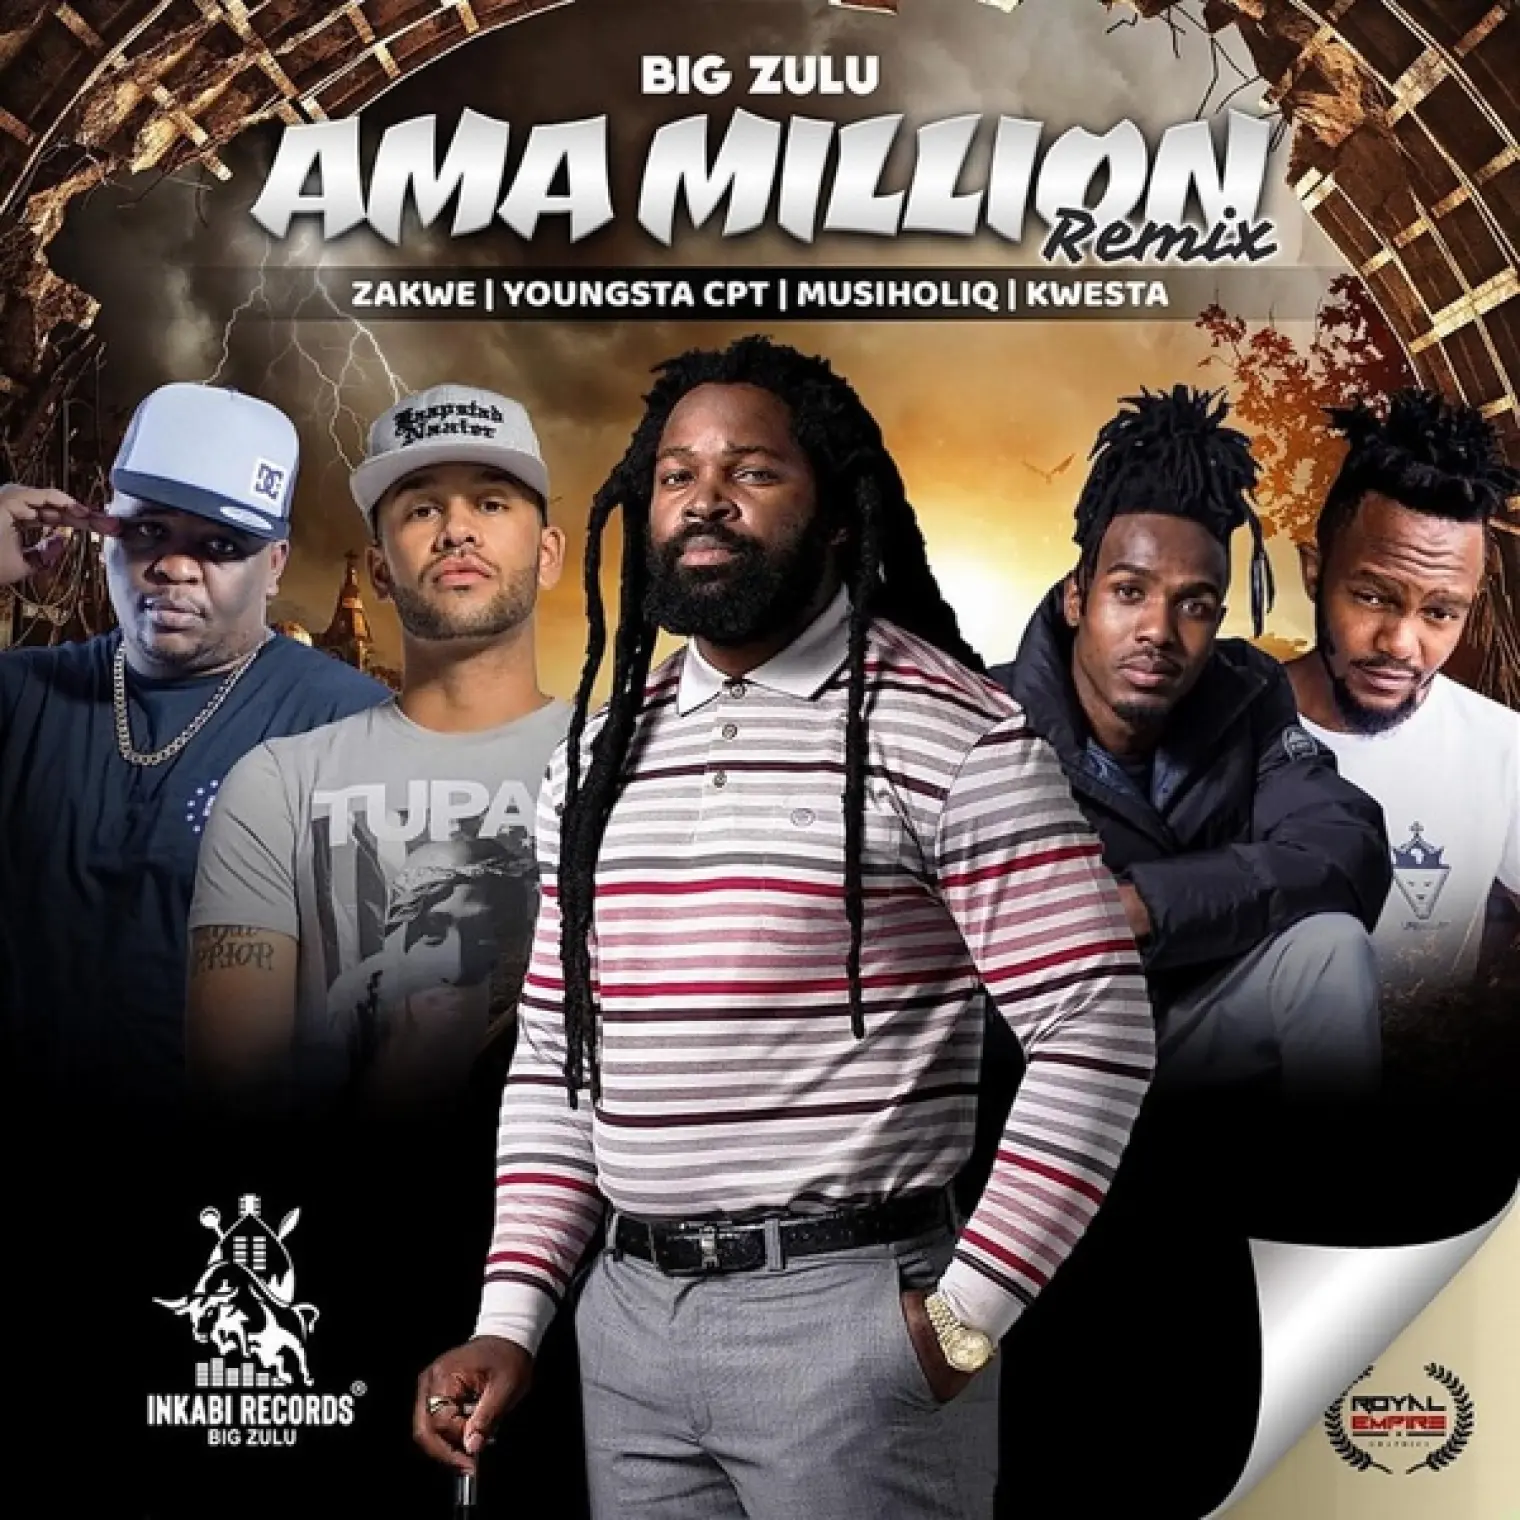 Ama Million (Remix) -  Big Zulu 